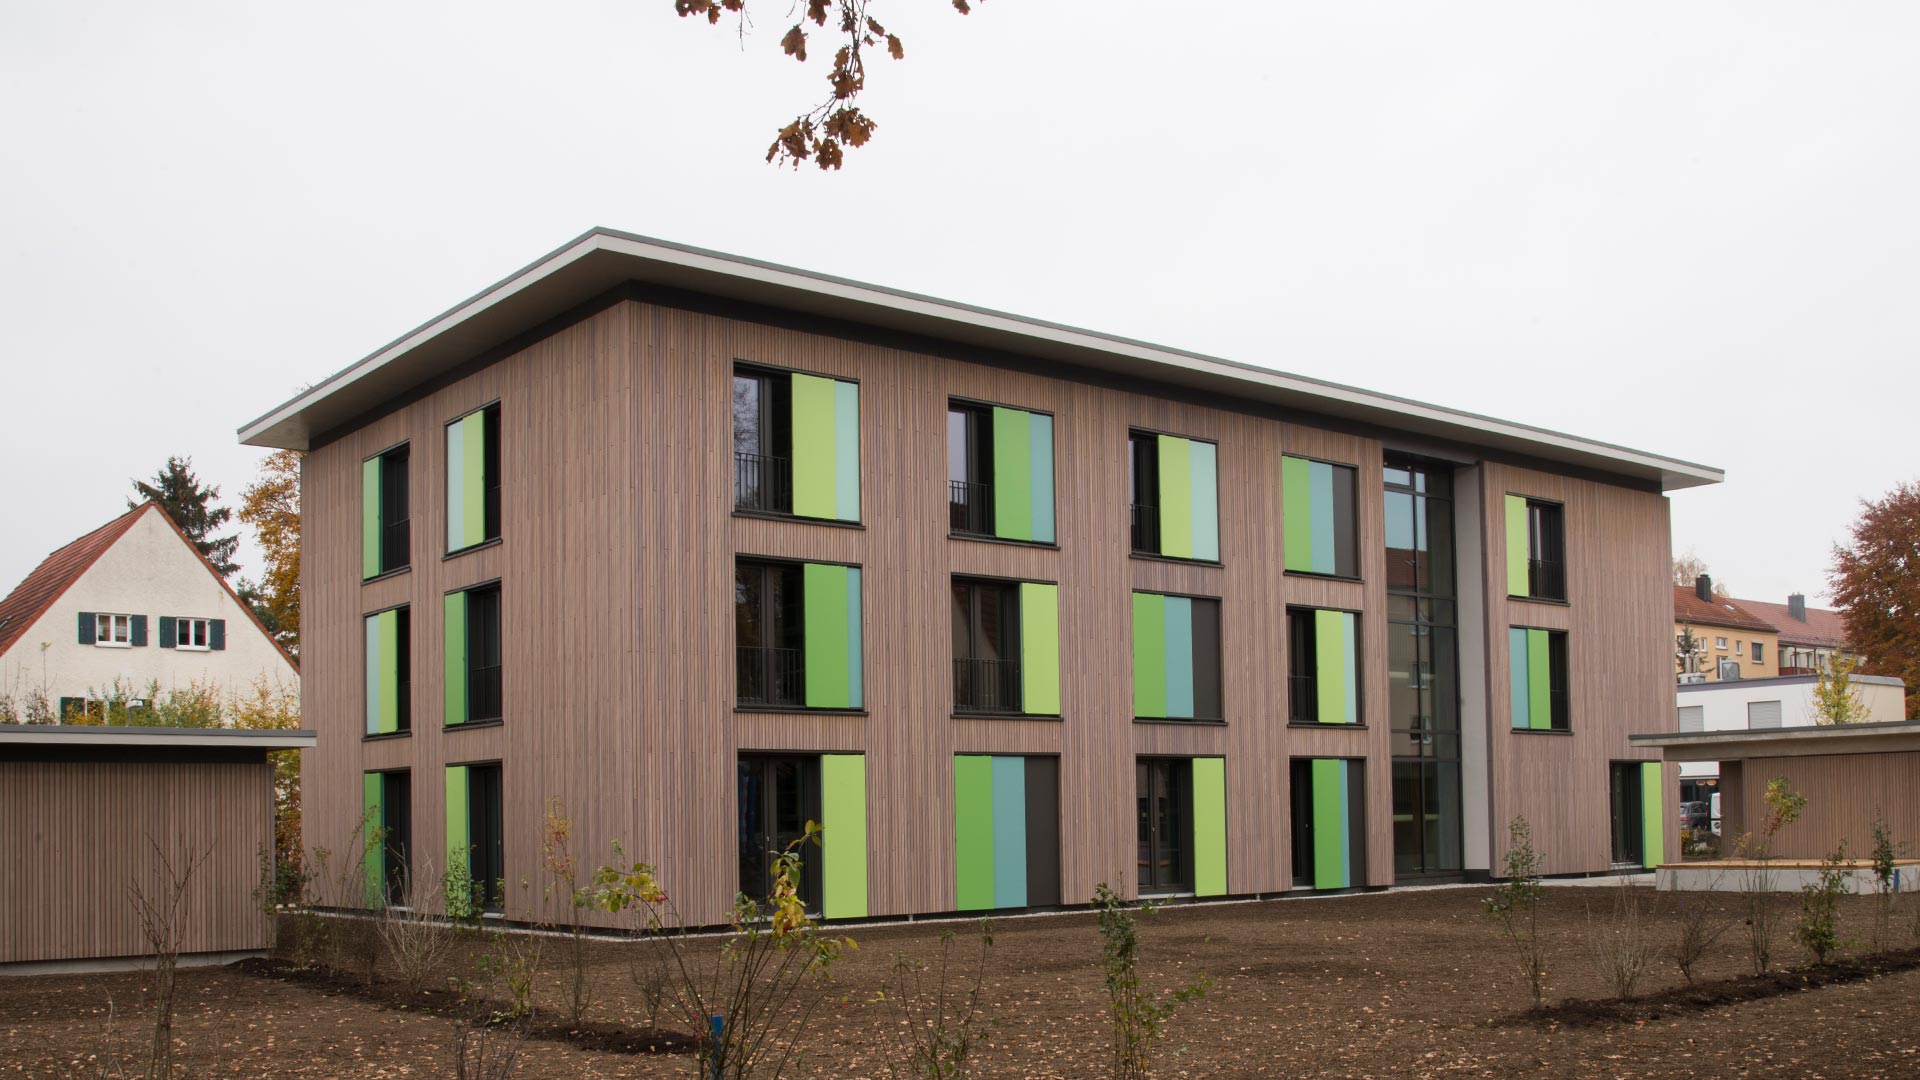 Impression der Studentenwohnheime in Haunstetten - ein Projekt der Knecht Ingenieure GmbH